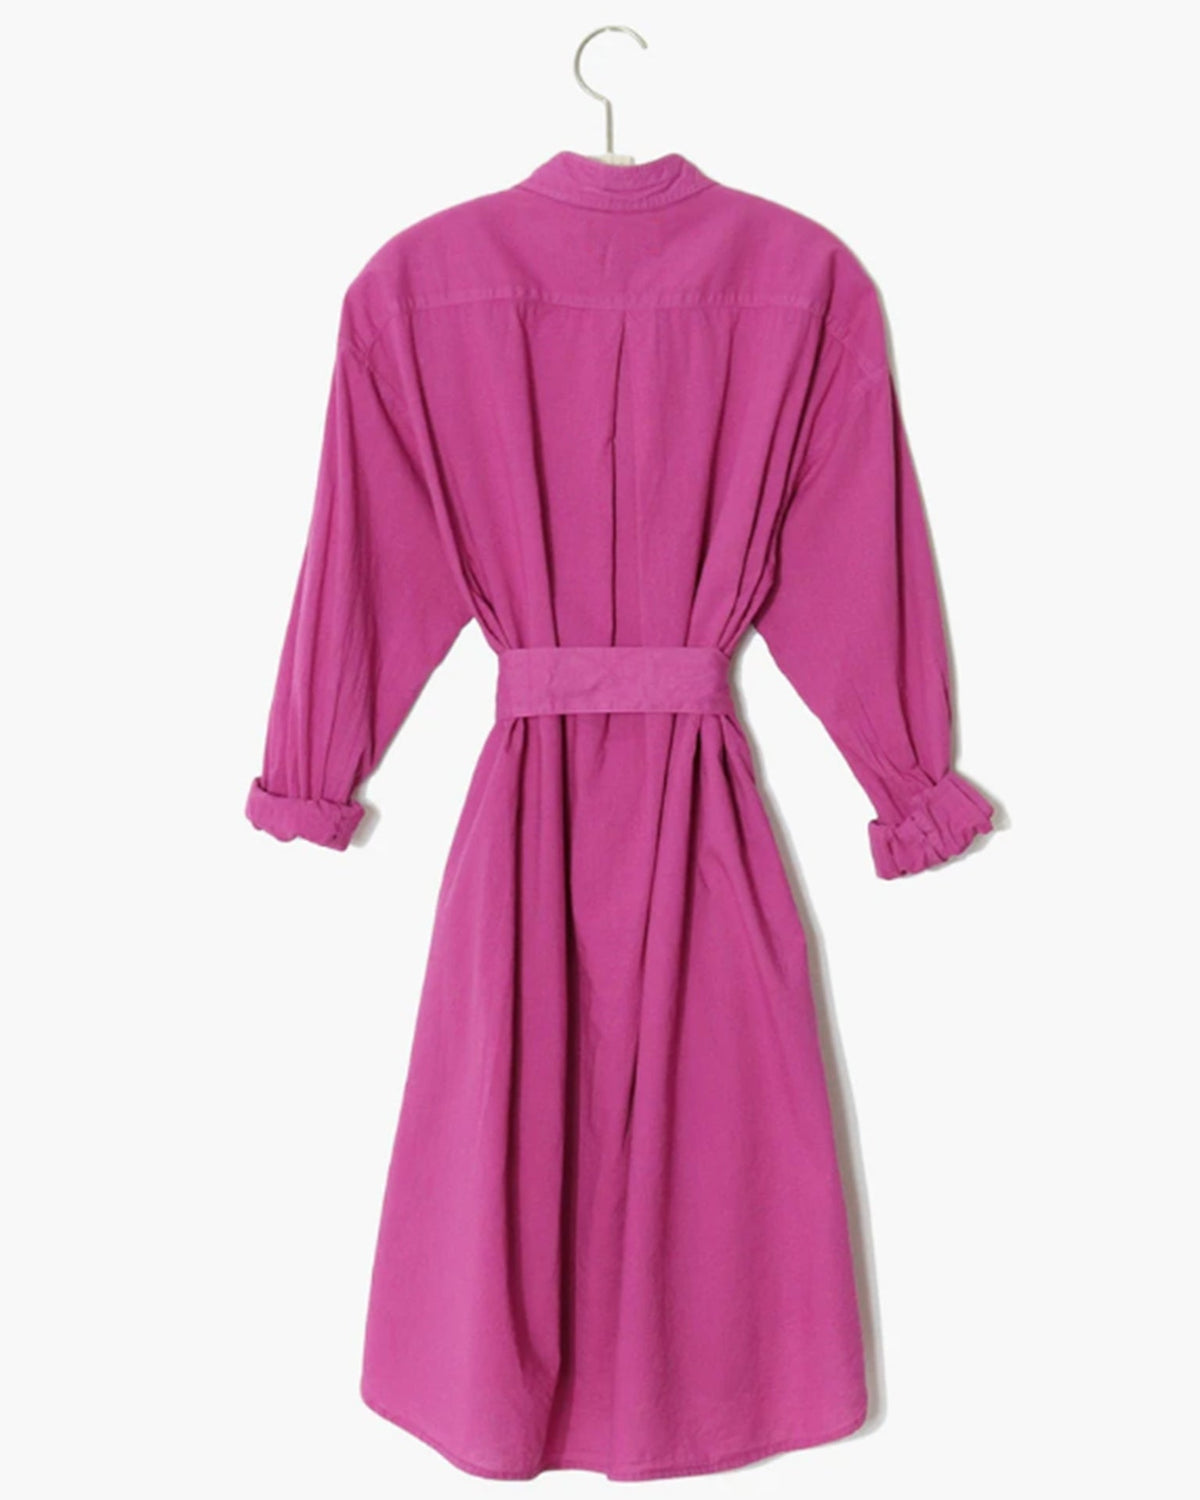 Xirena Clothing Blayke Dress in Purple Wine